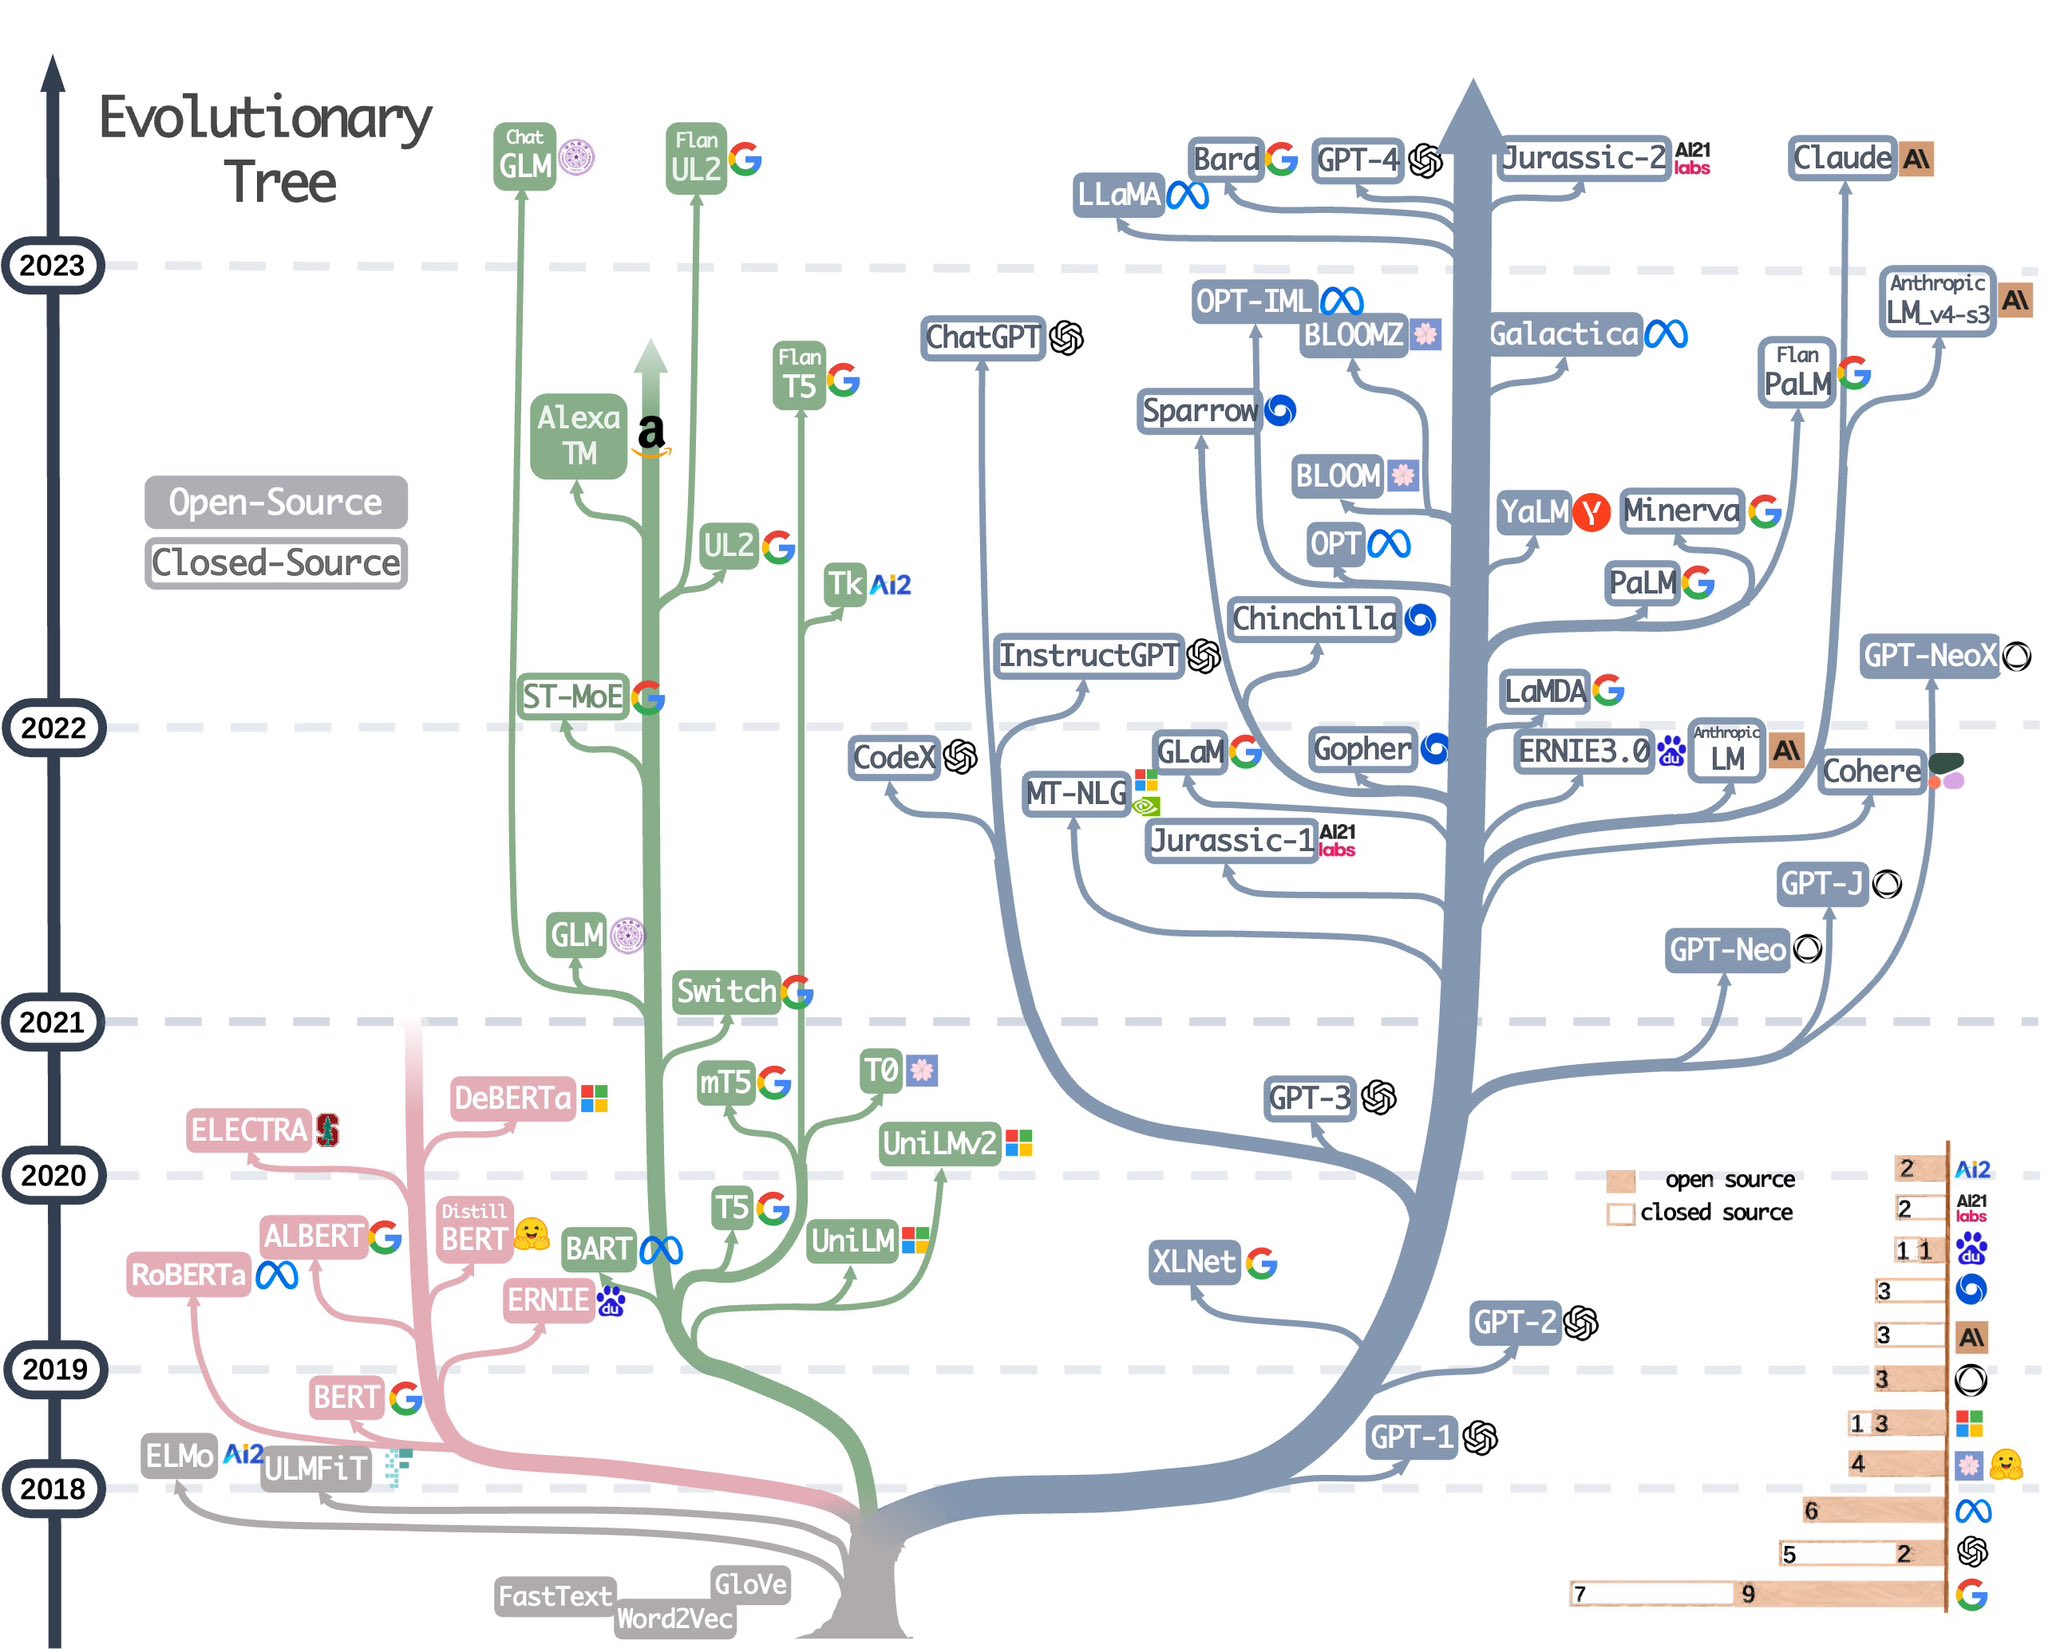 一张图总结大语言模型的技术分类、现状和开源情况